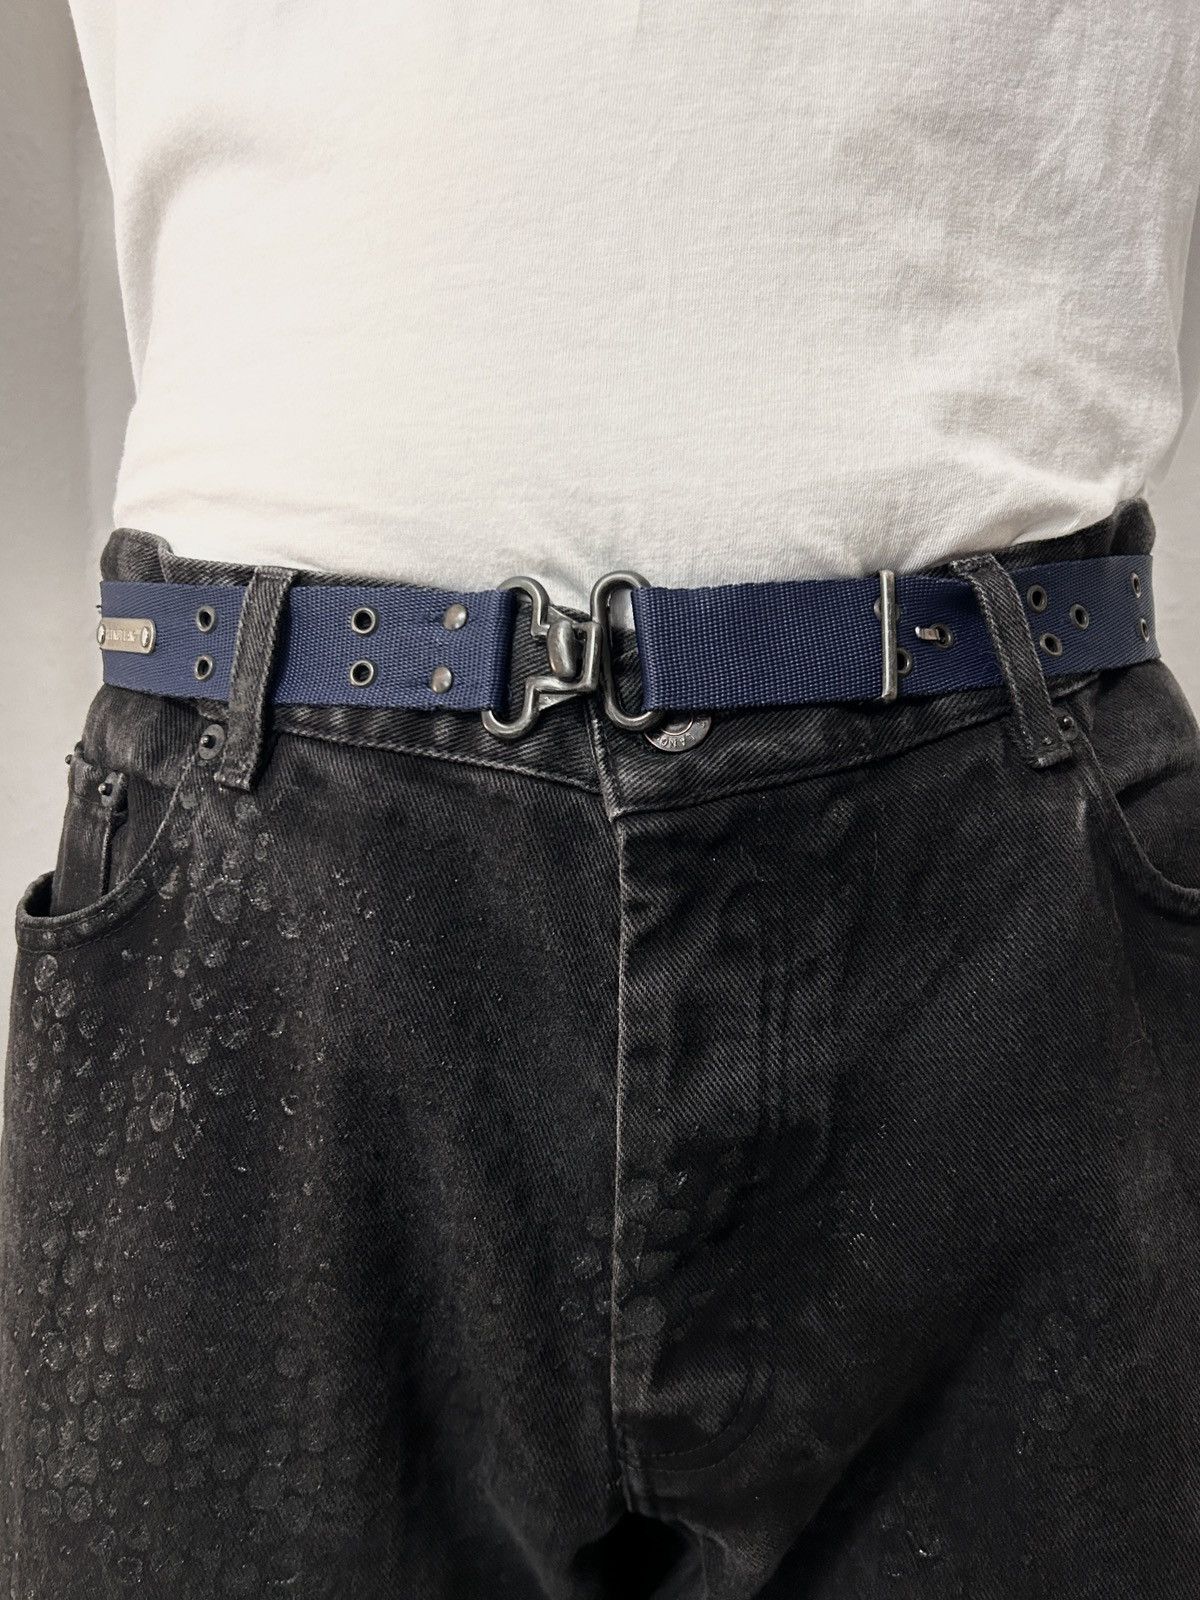 9,680円helmut lang jeans 1998 military belt